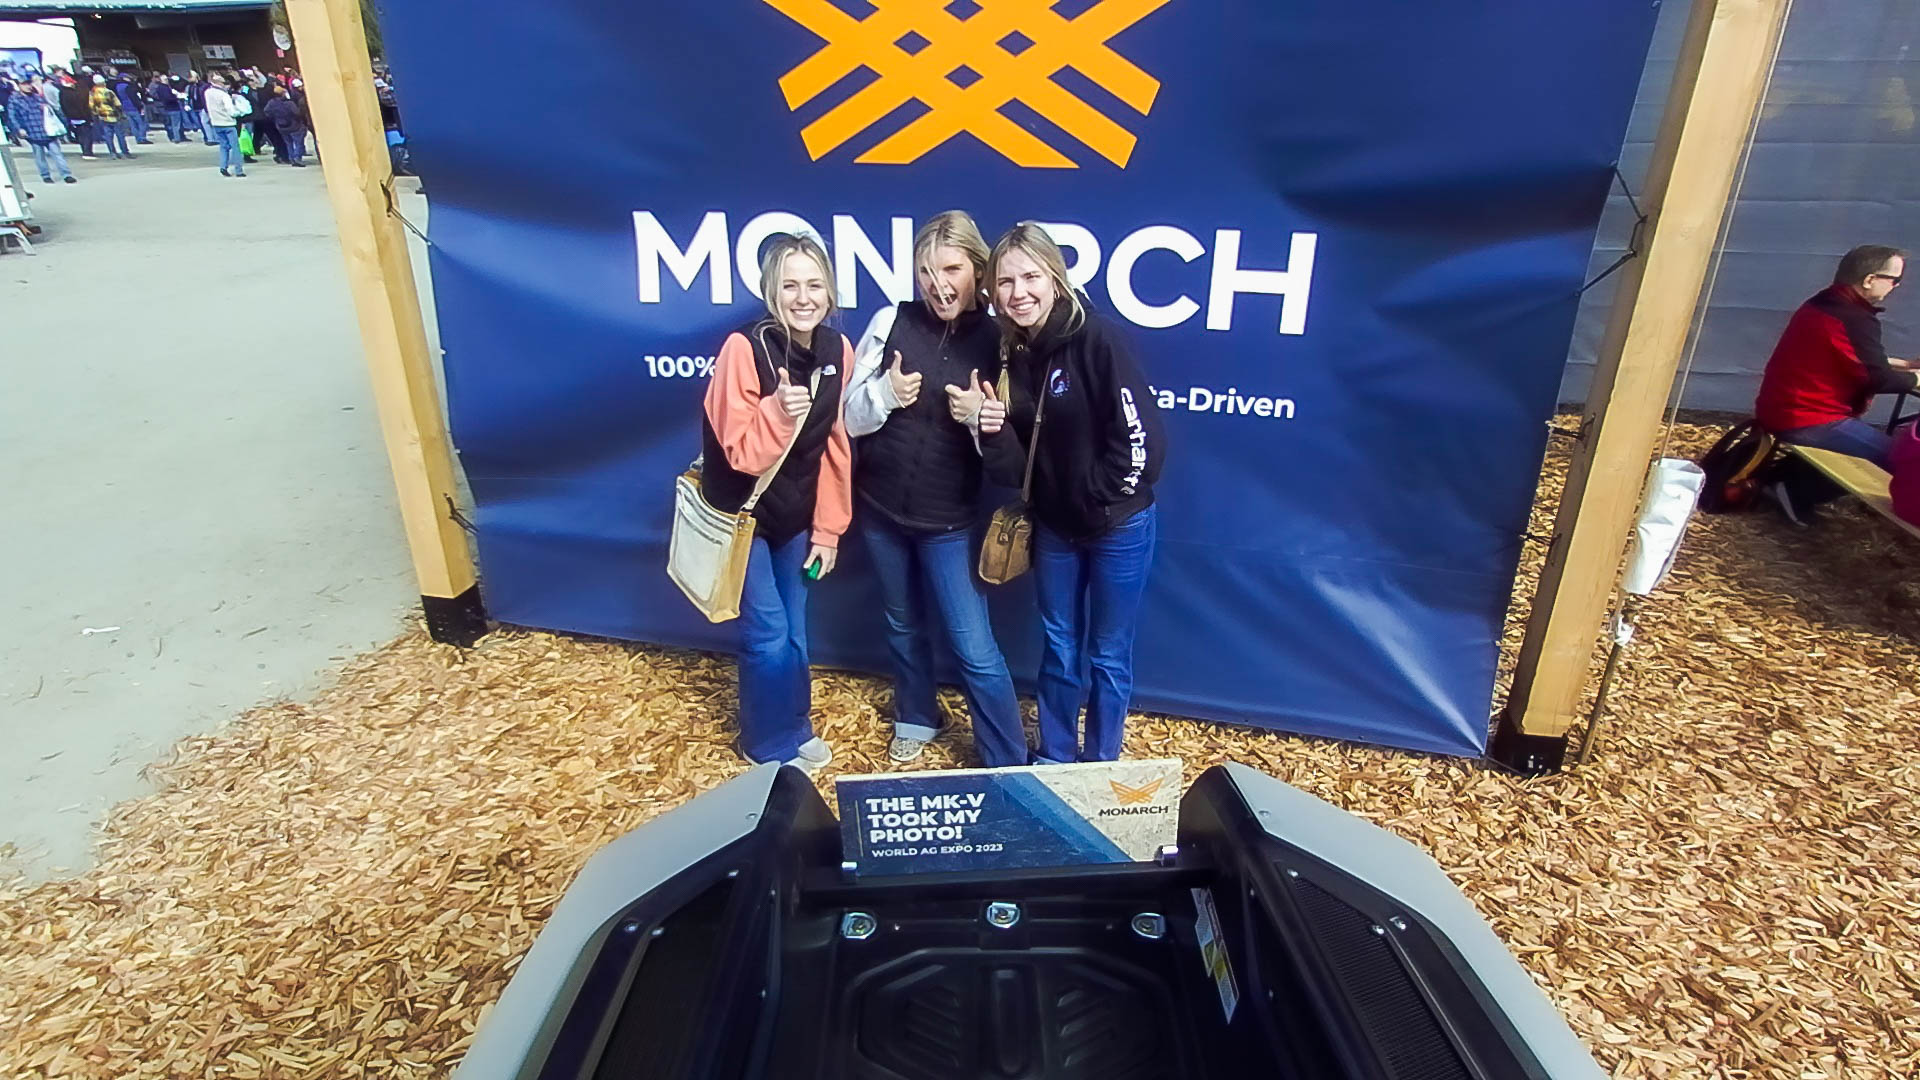 107-Monarch-Tractor-Selfie#2